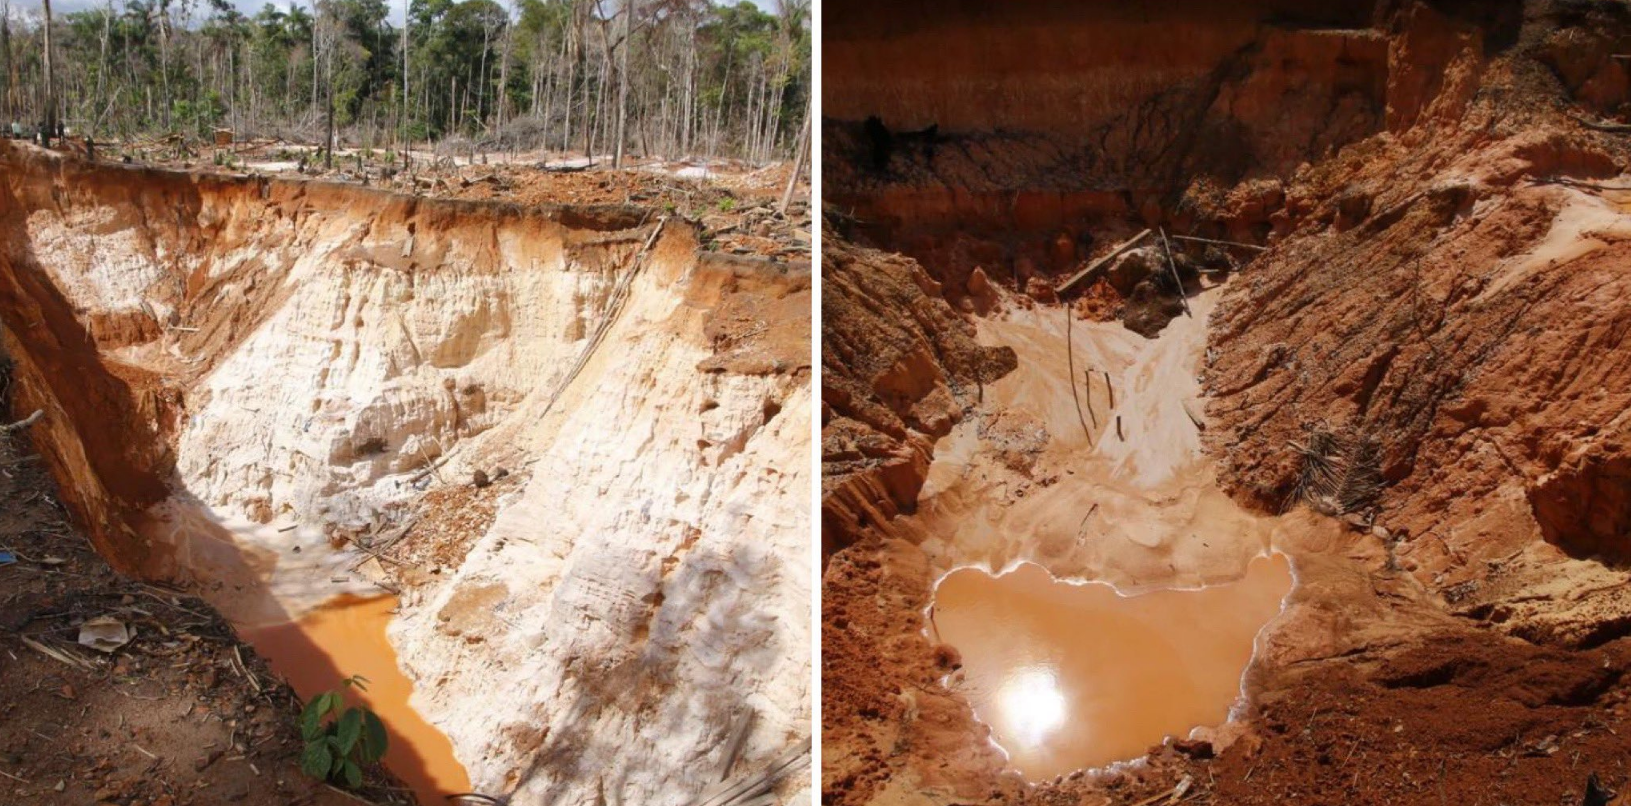 SOS Orinoco desmintió a general chavista y alertó que sigue creciendo la deforestación en la mina Bulla Loca